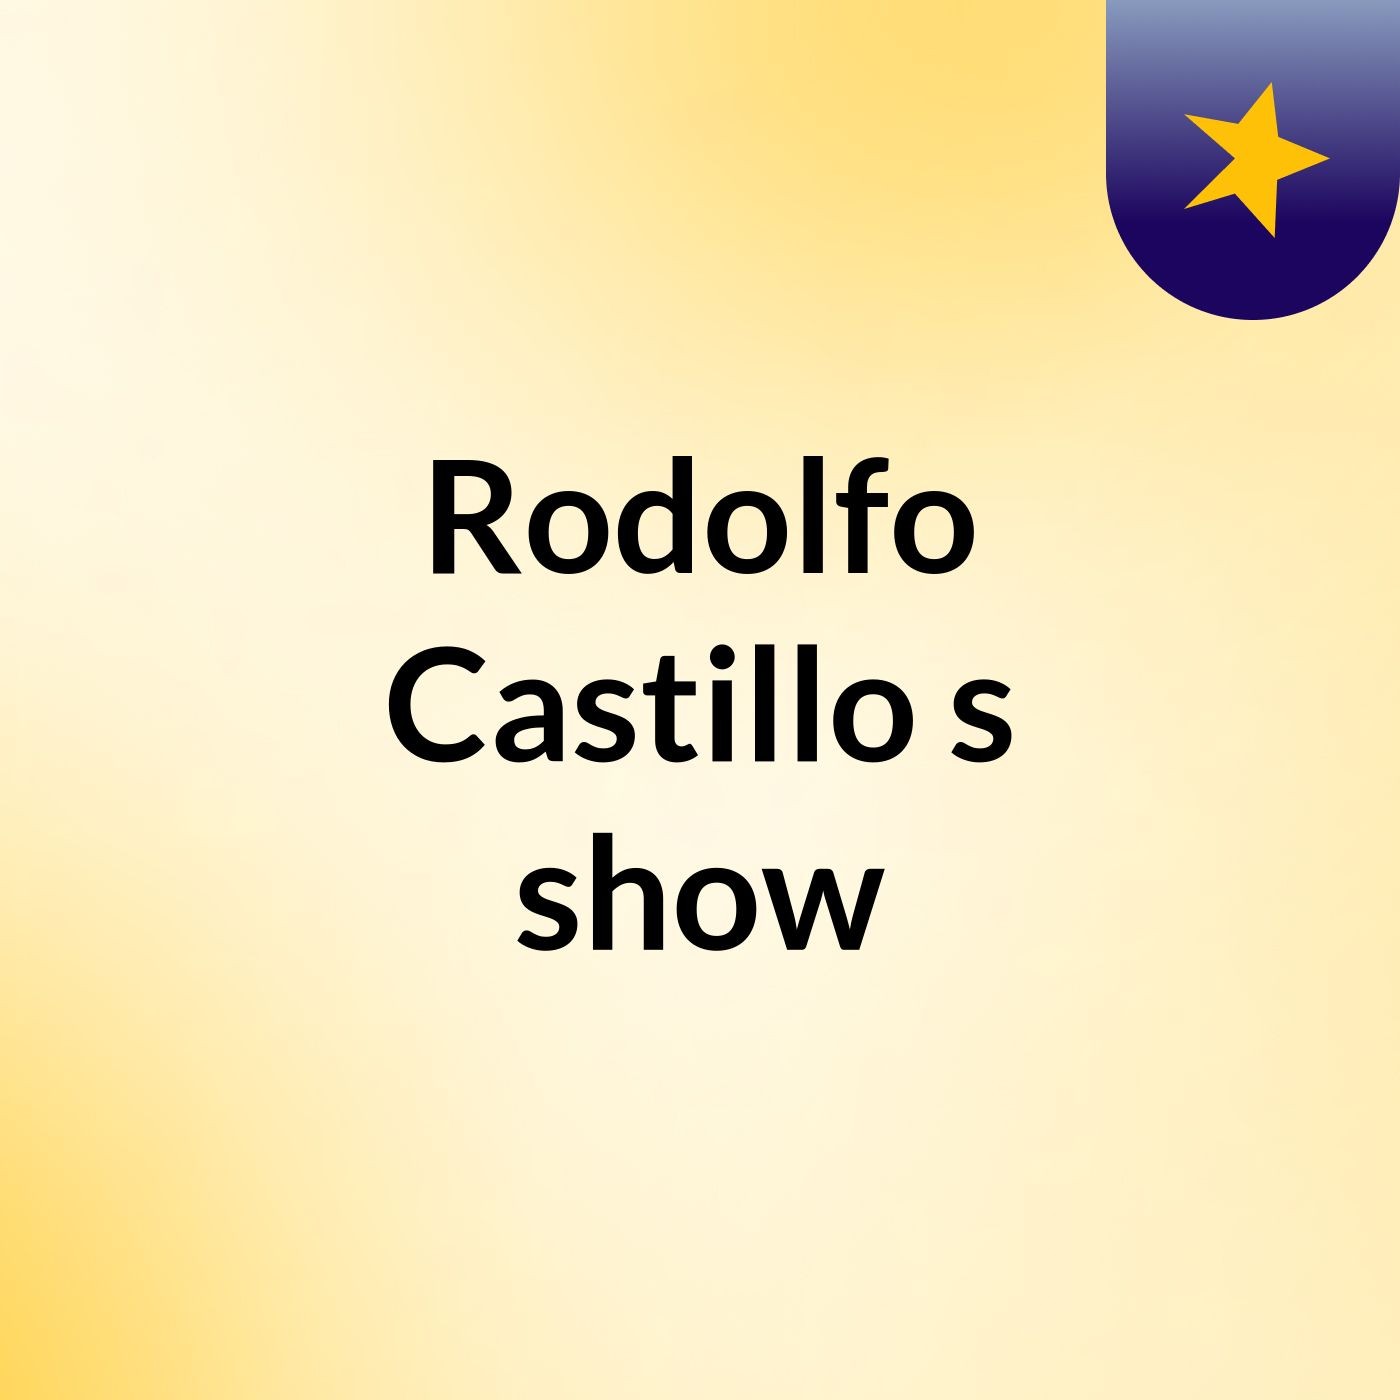 Rodolfo Castillo's show